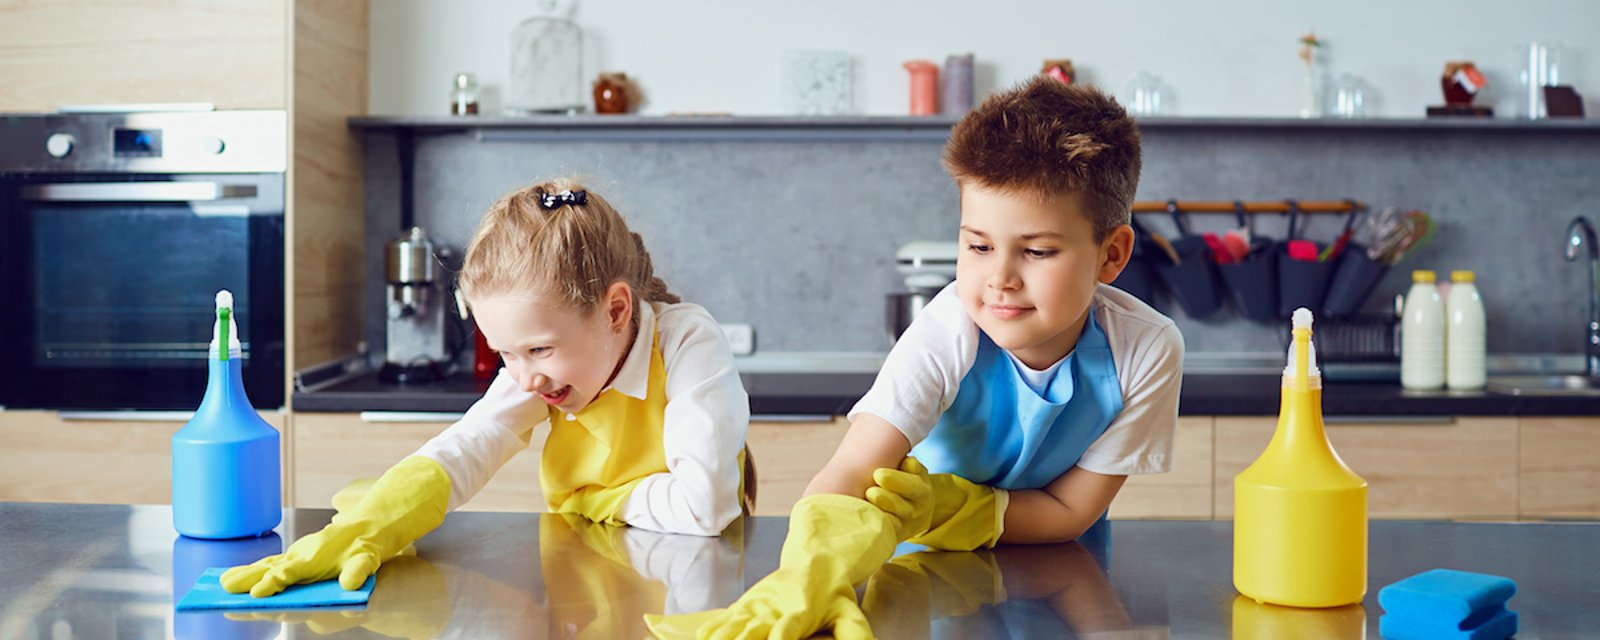 La science nous dit à quel âge il faudrait commencer à impliquer les enfants dans les tâches ménagères